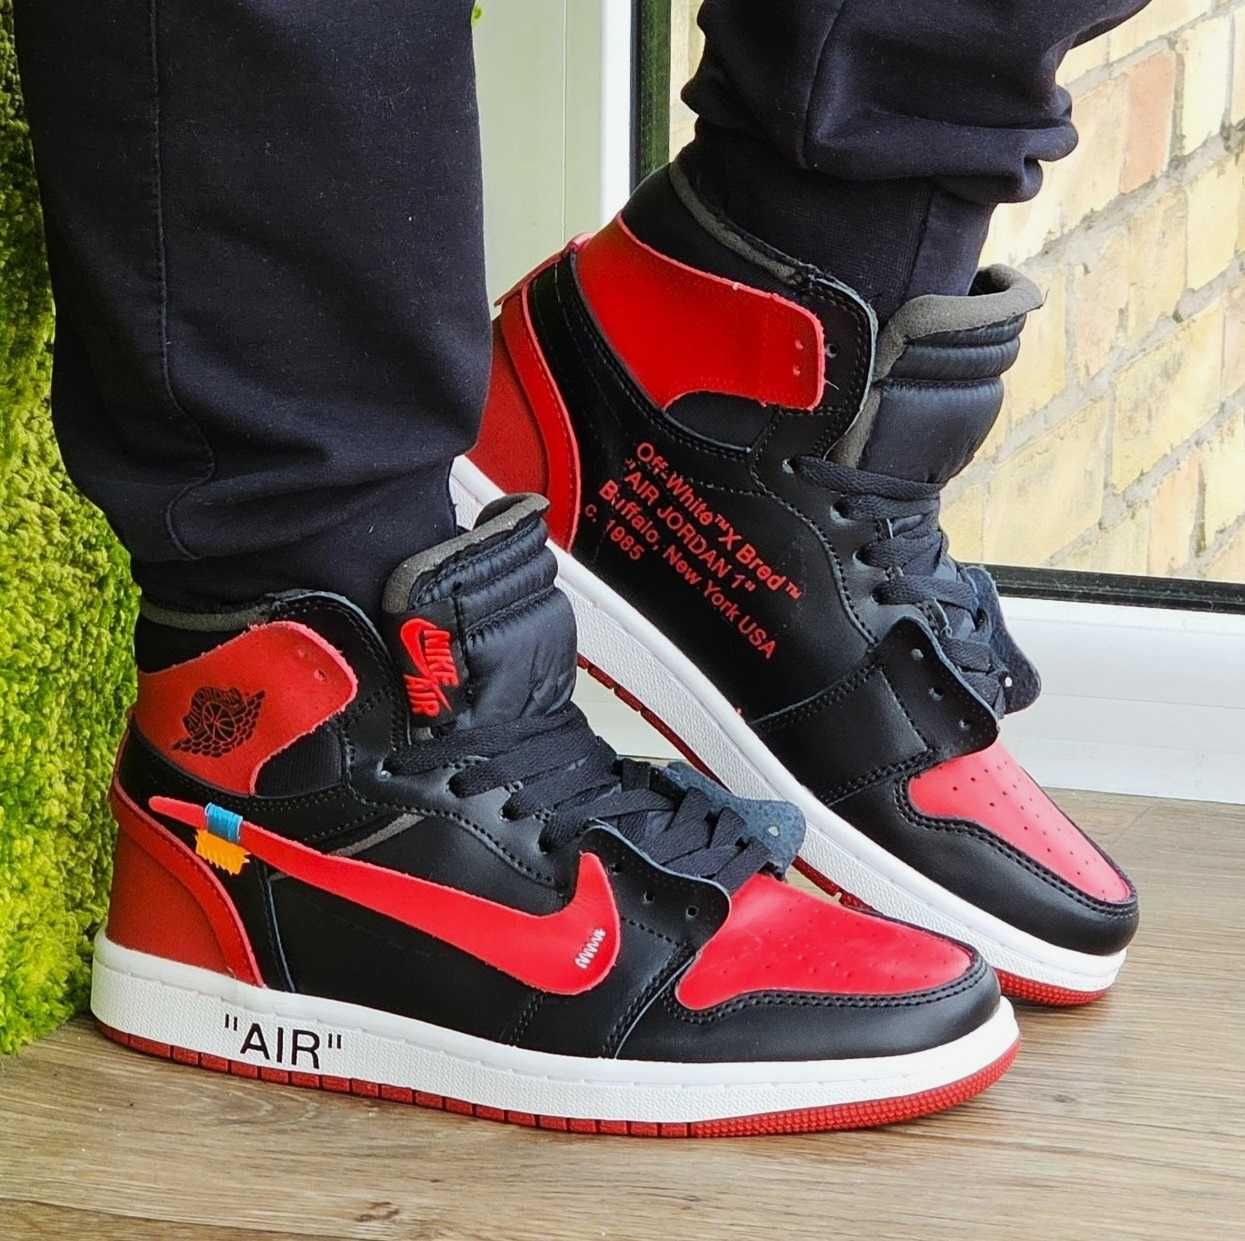 Кроссовки Найк Мужские Jordan Красные Черные Джорданы Высокие Nike